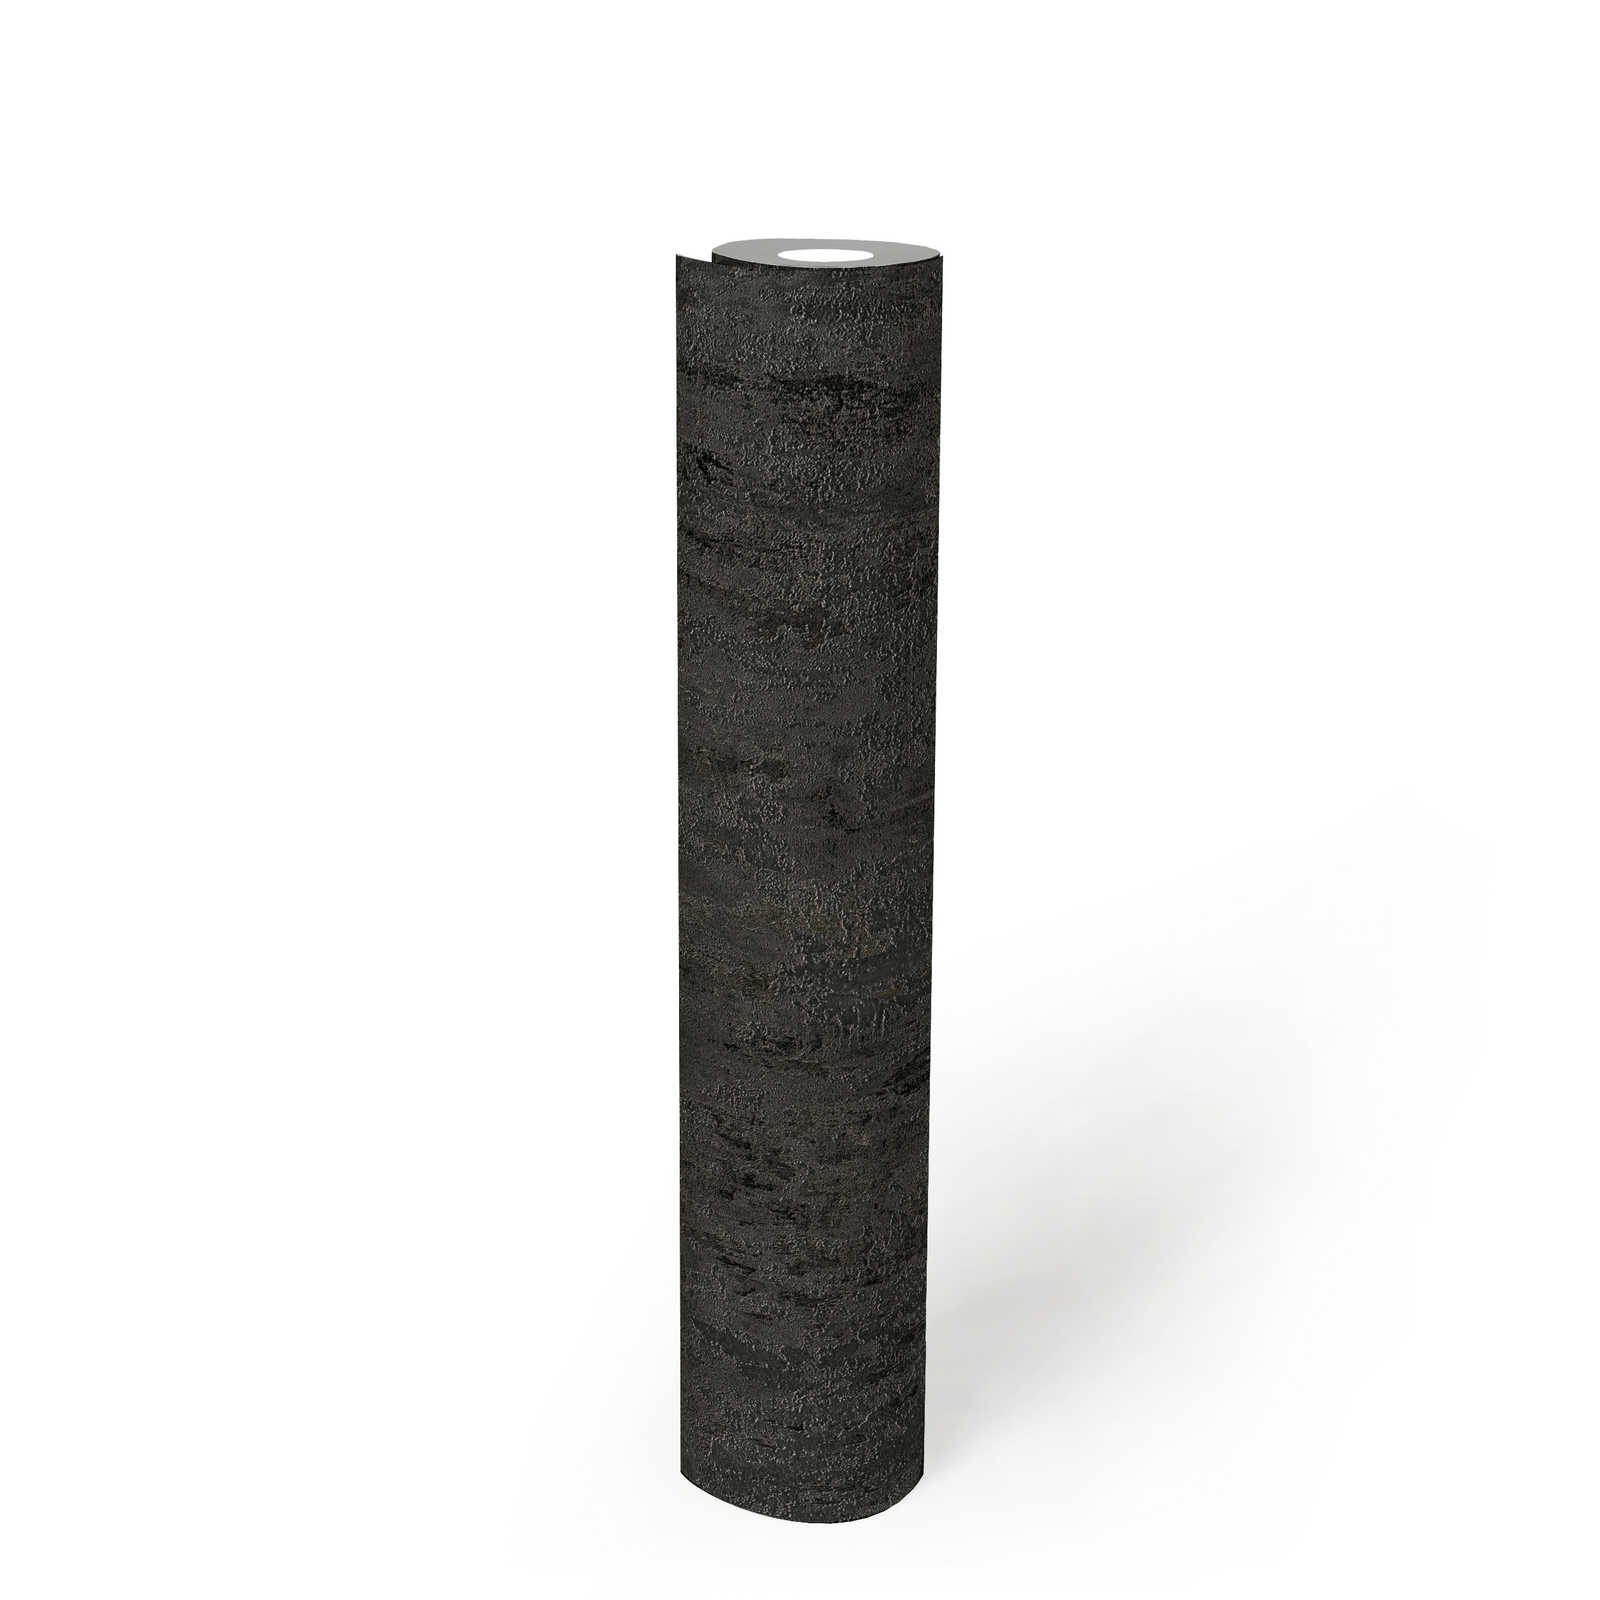             Rustiek structuurbehang metaallook antraciet - zwart, zilver, grijs
        